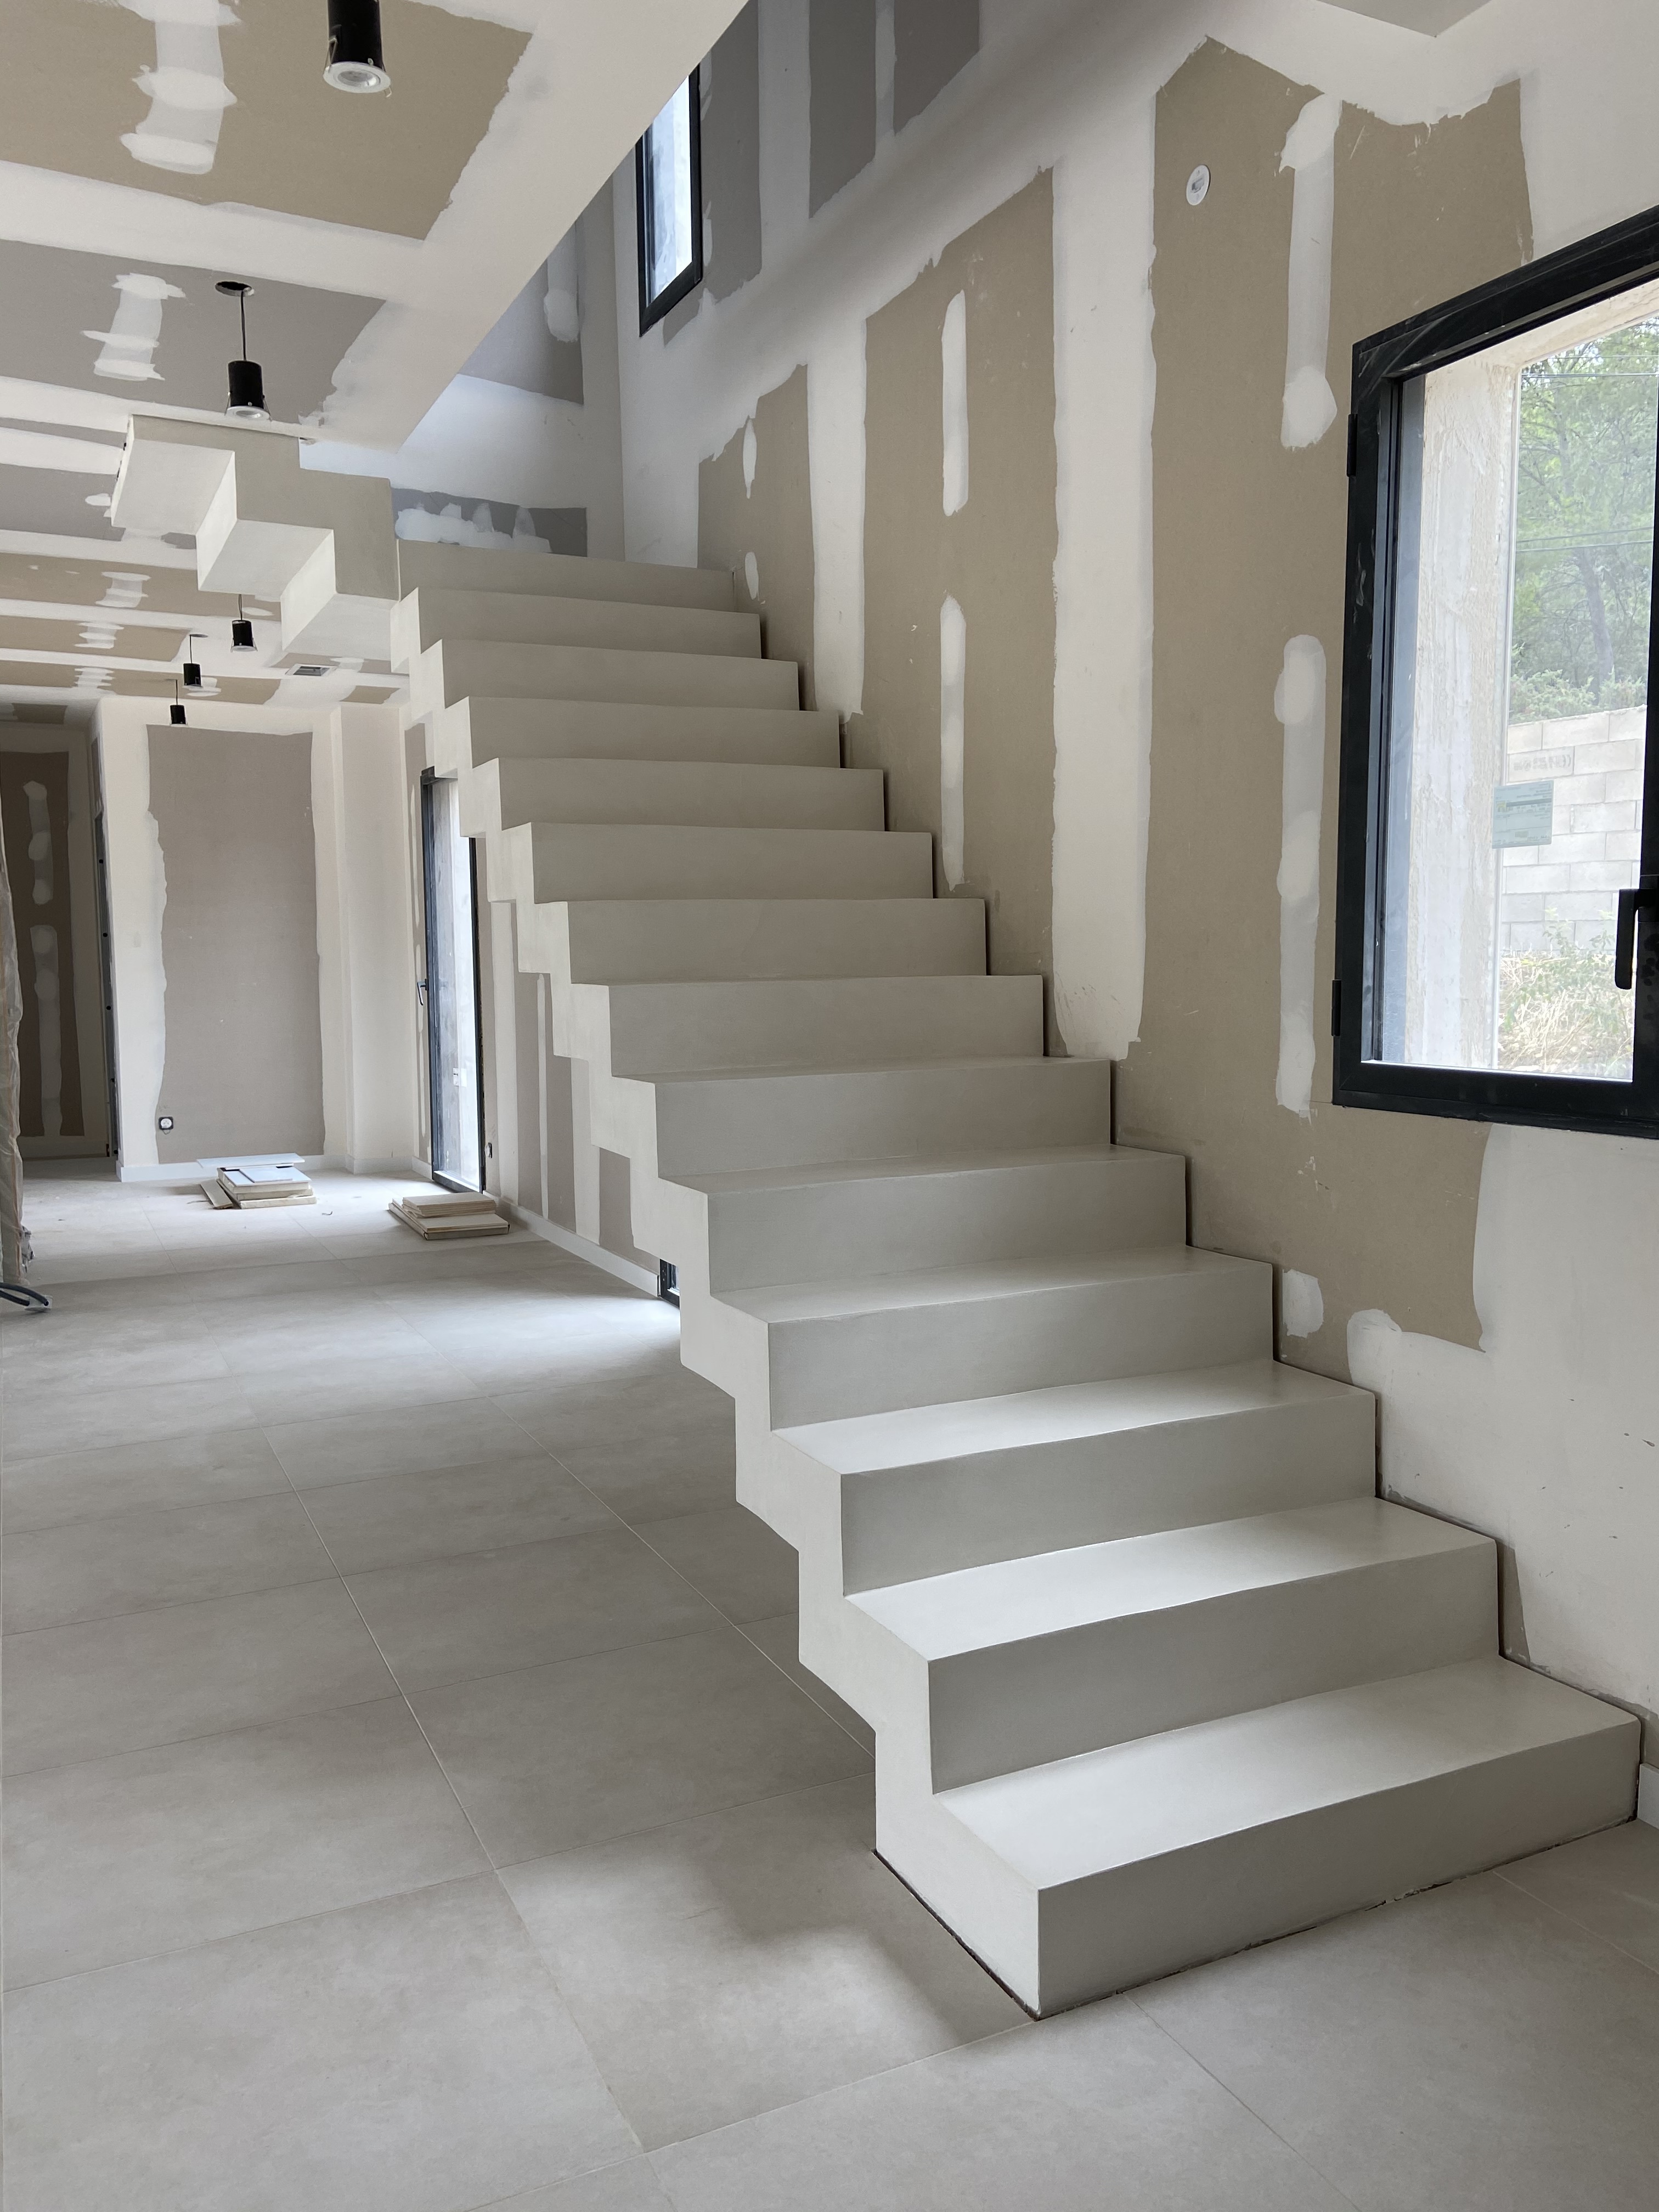 Escalier à crémaillère en béton ciré, teinte terracotta, pour un particulier, dans le département du Vaucluse. Large choix de couleurs et de finitions.